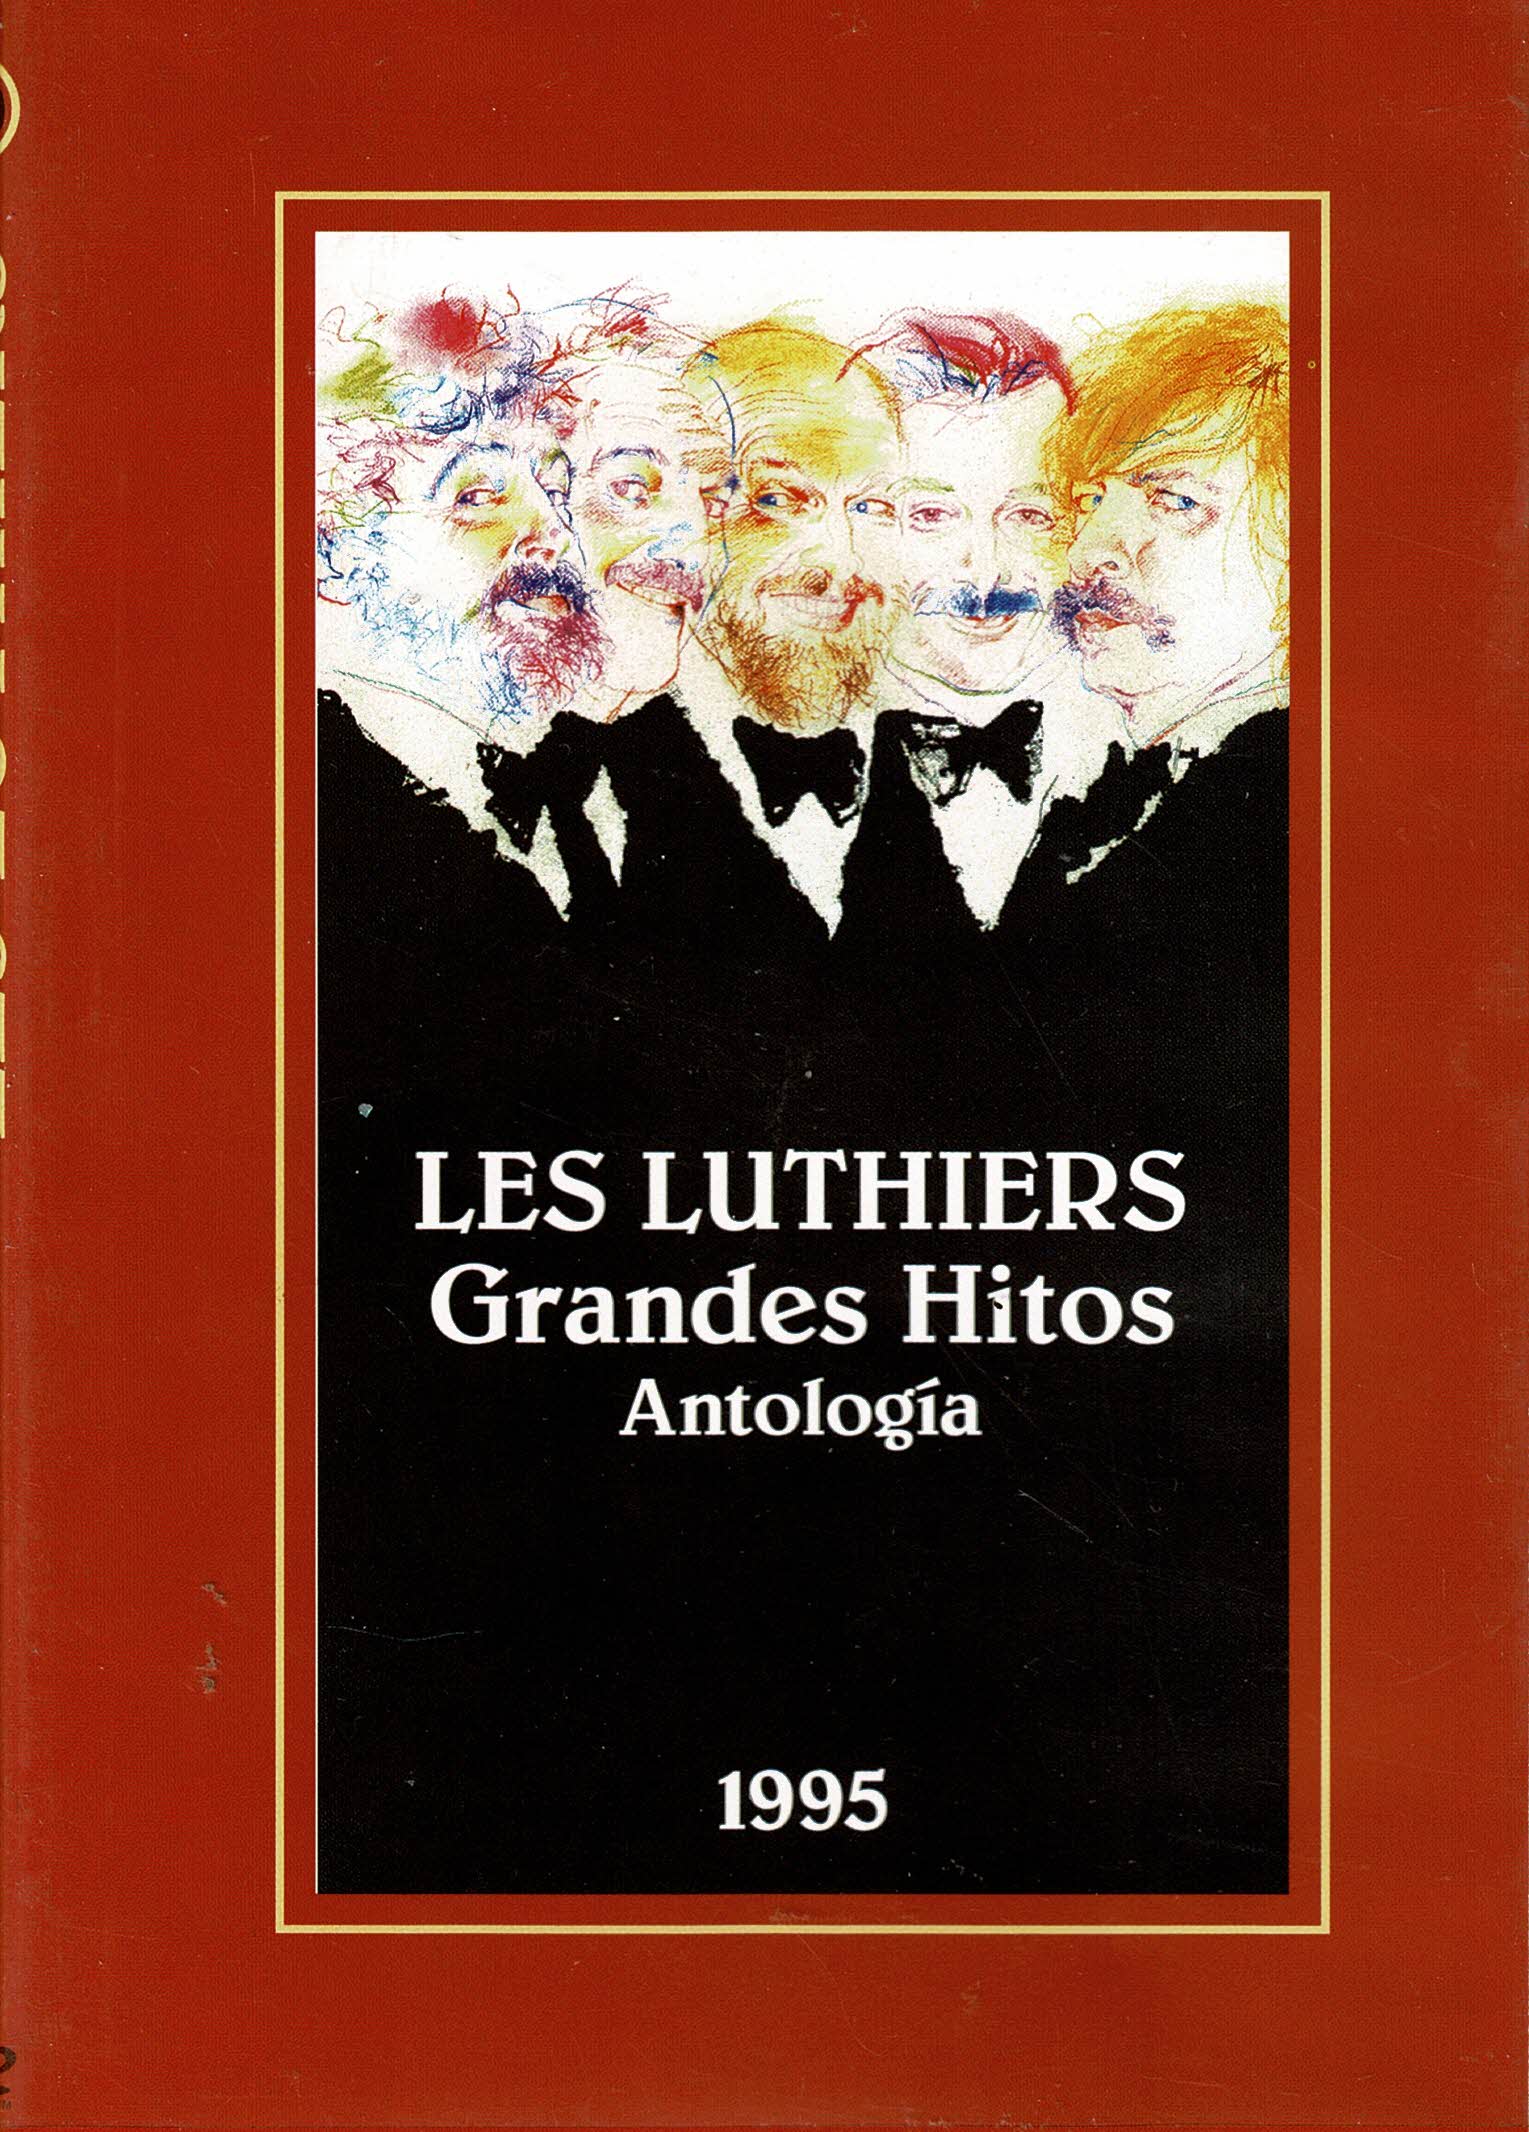 Les Luthiers Grandes Hitos Antología (1995)